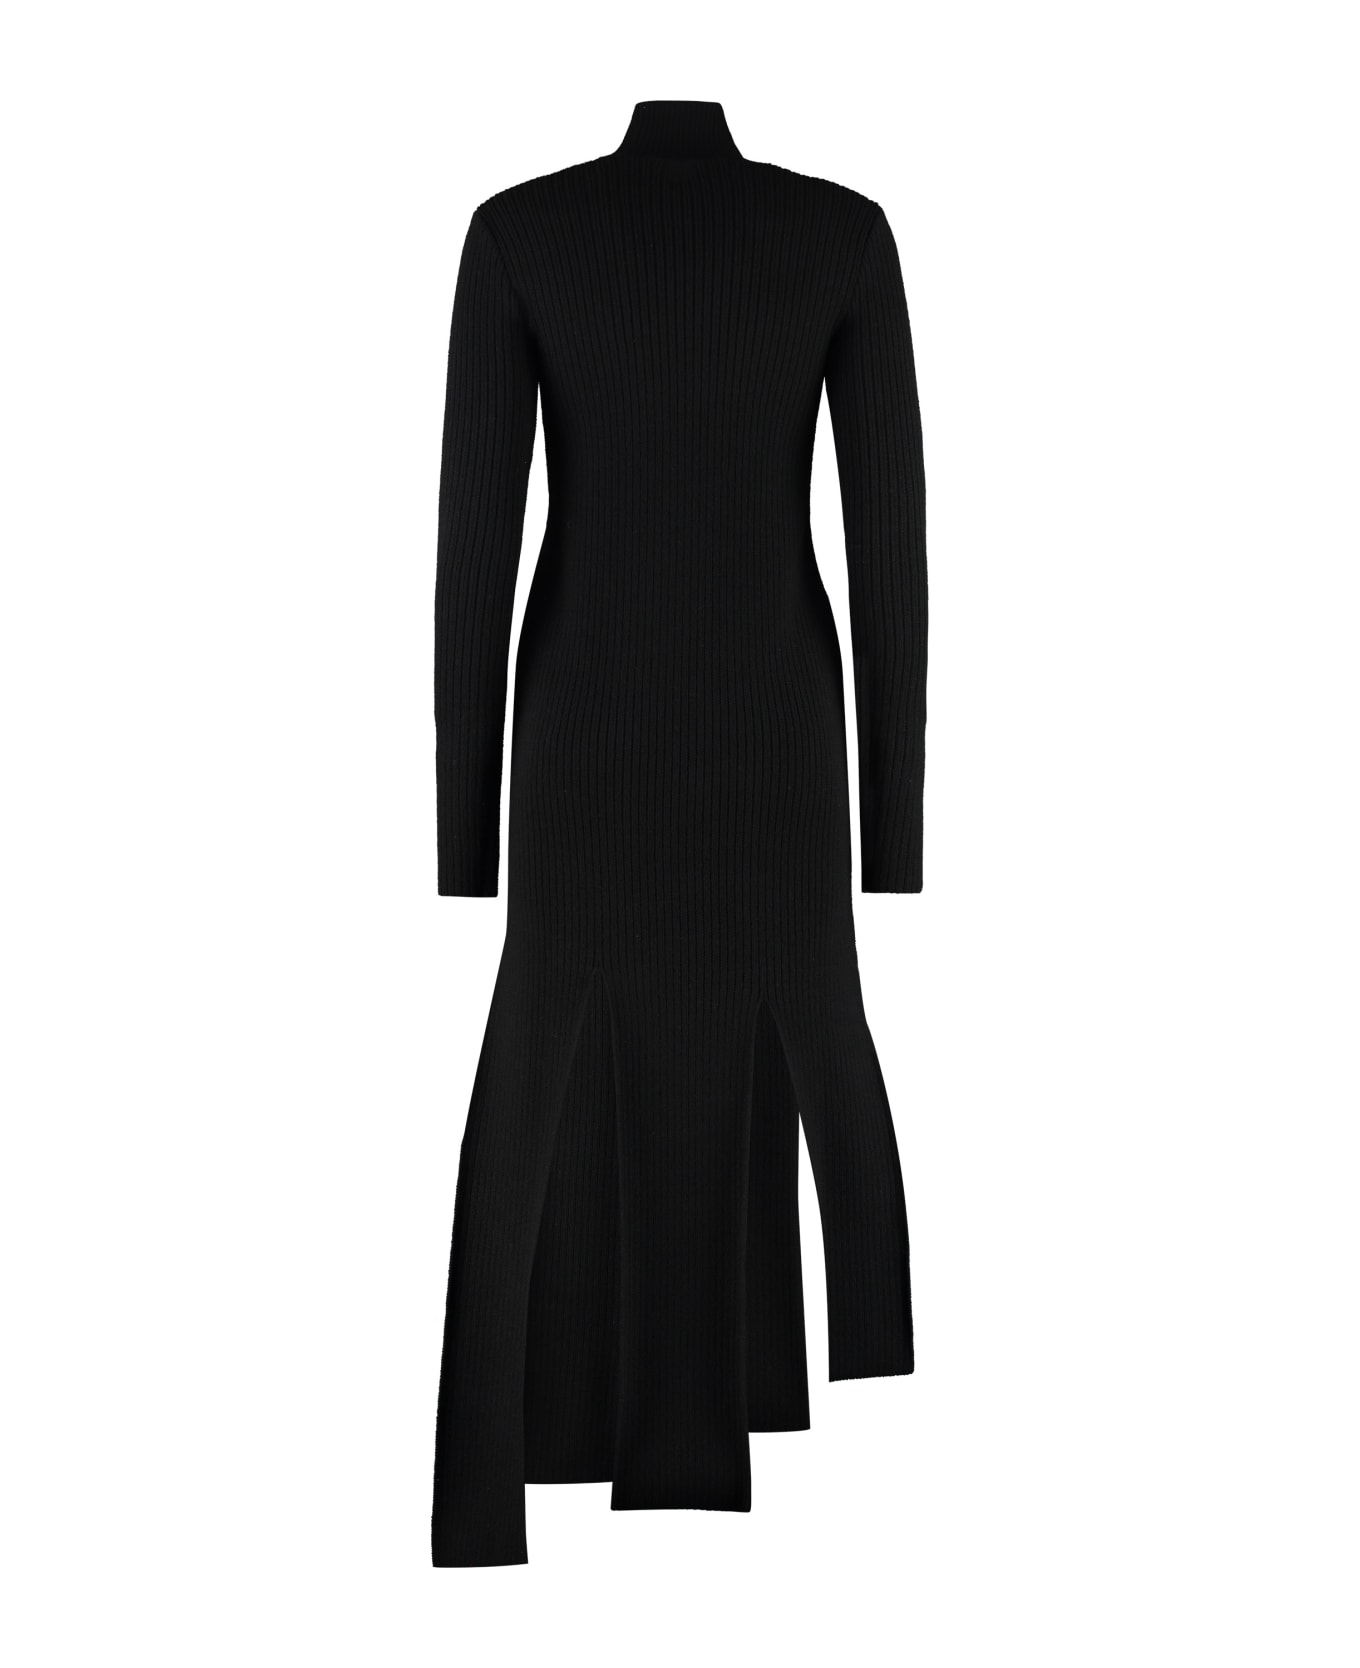 Bottega Veneta Ribbed Knit Dress - black